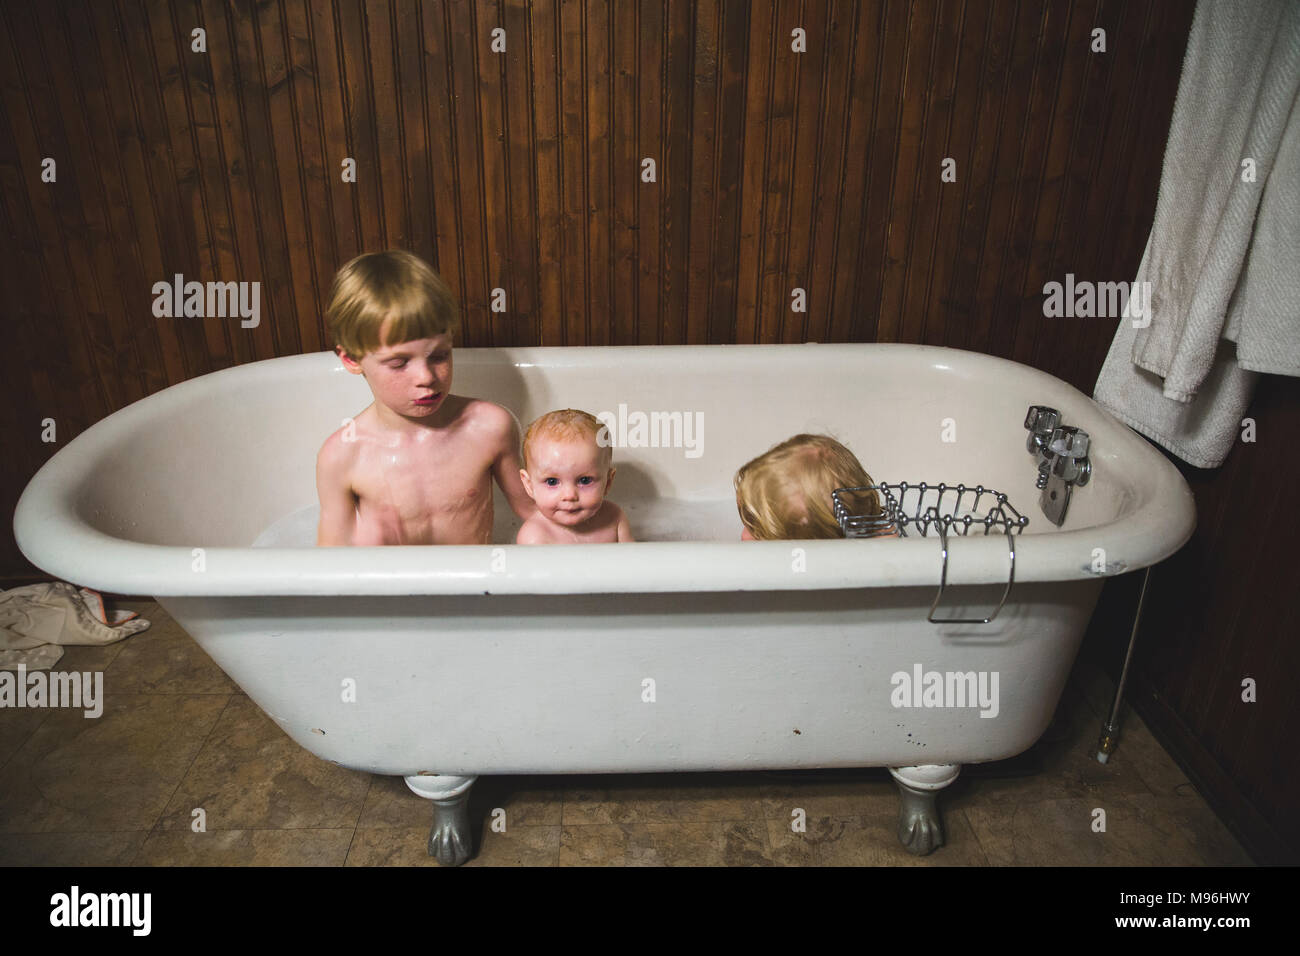 Garçon, fille et bébé jouant la baignoire Banque D'Images